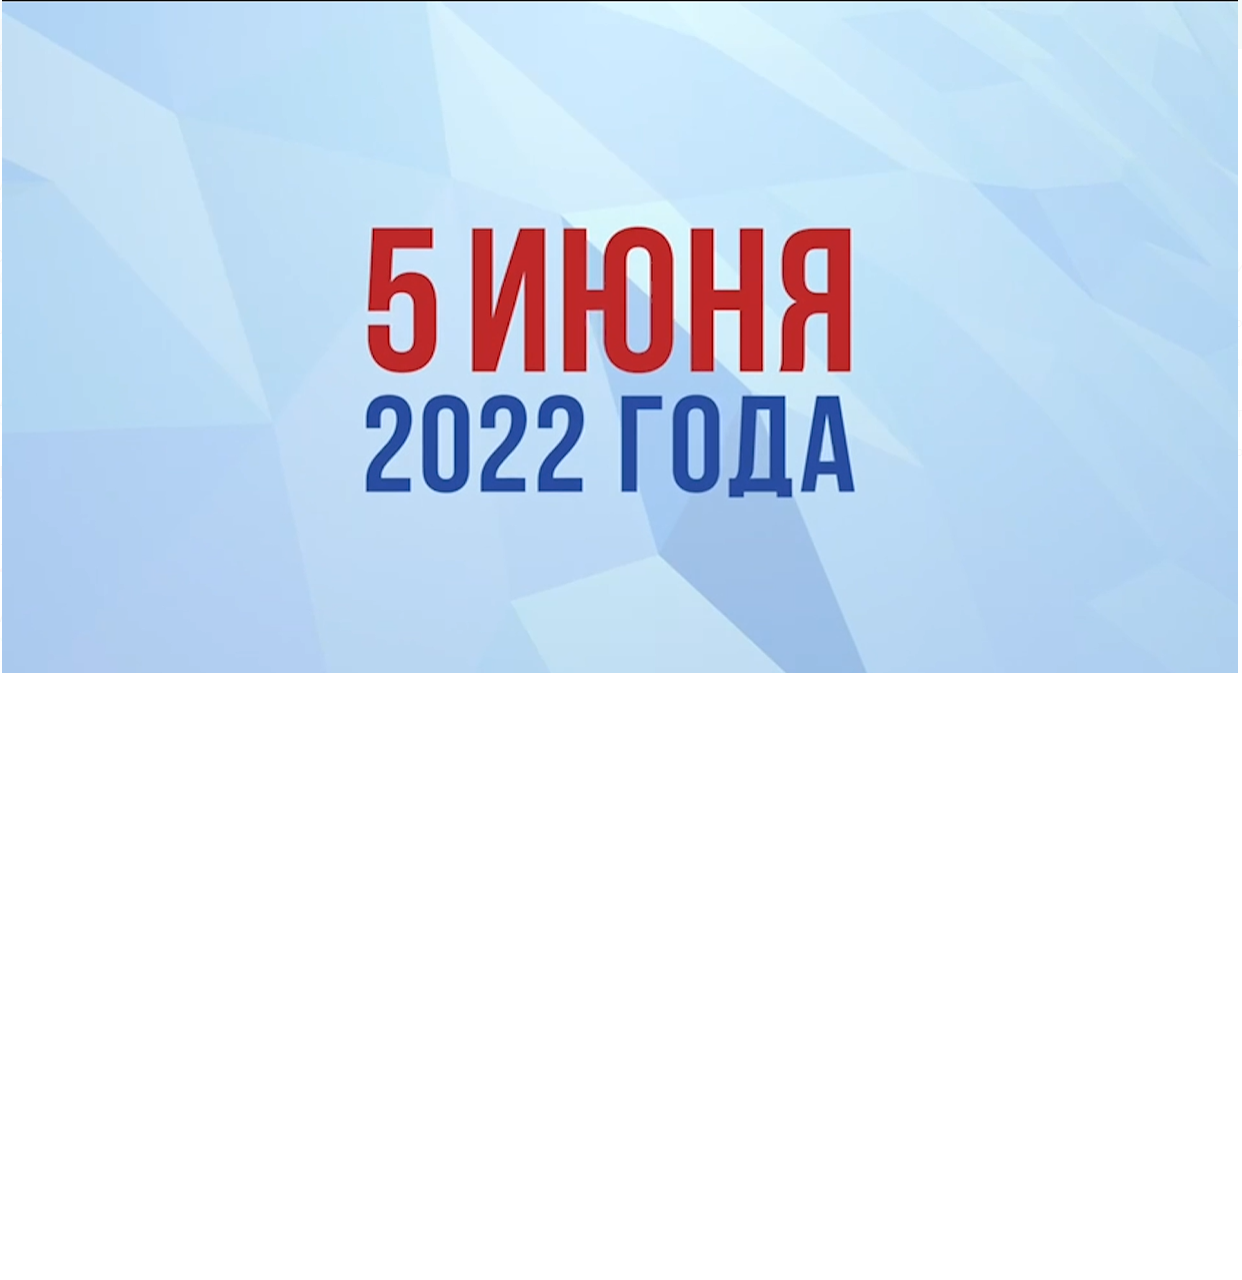 Республиканский референдум по внесению изменений и дополнений в конституцию Республики Казахстан